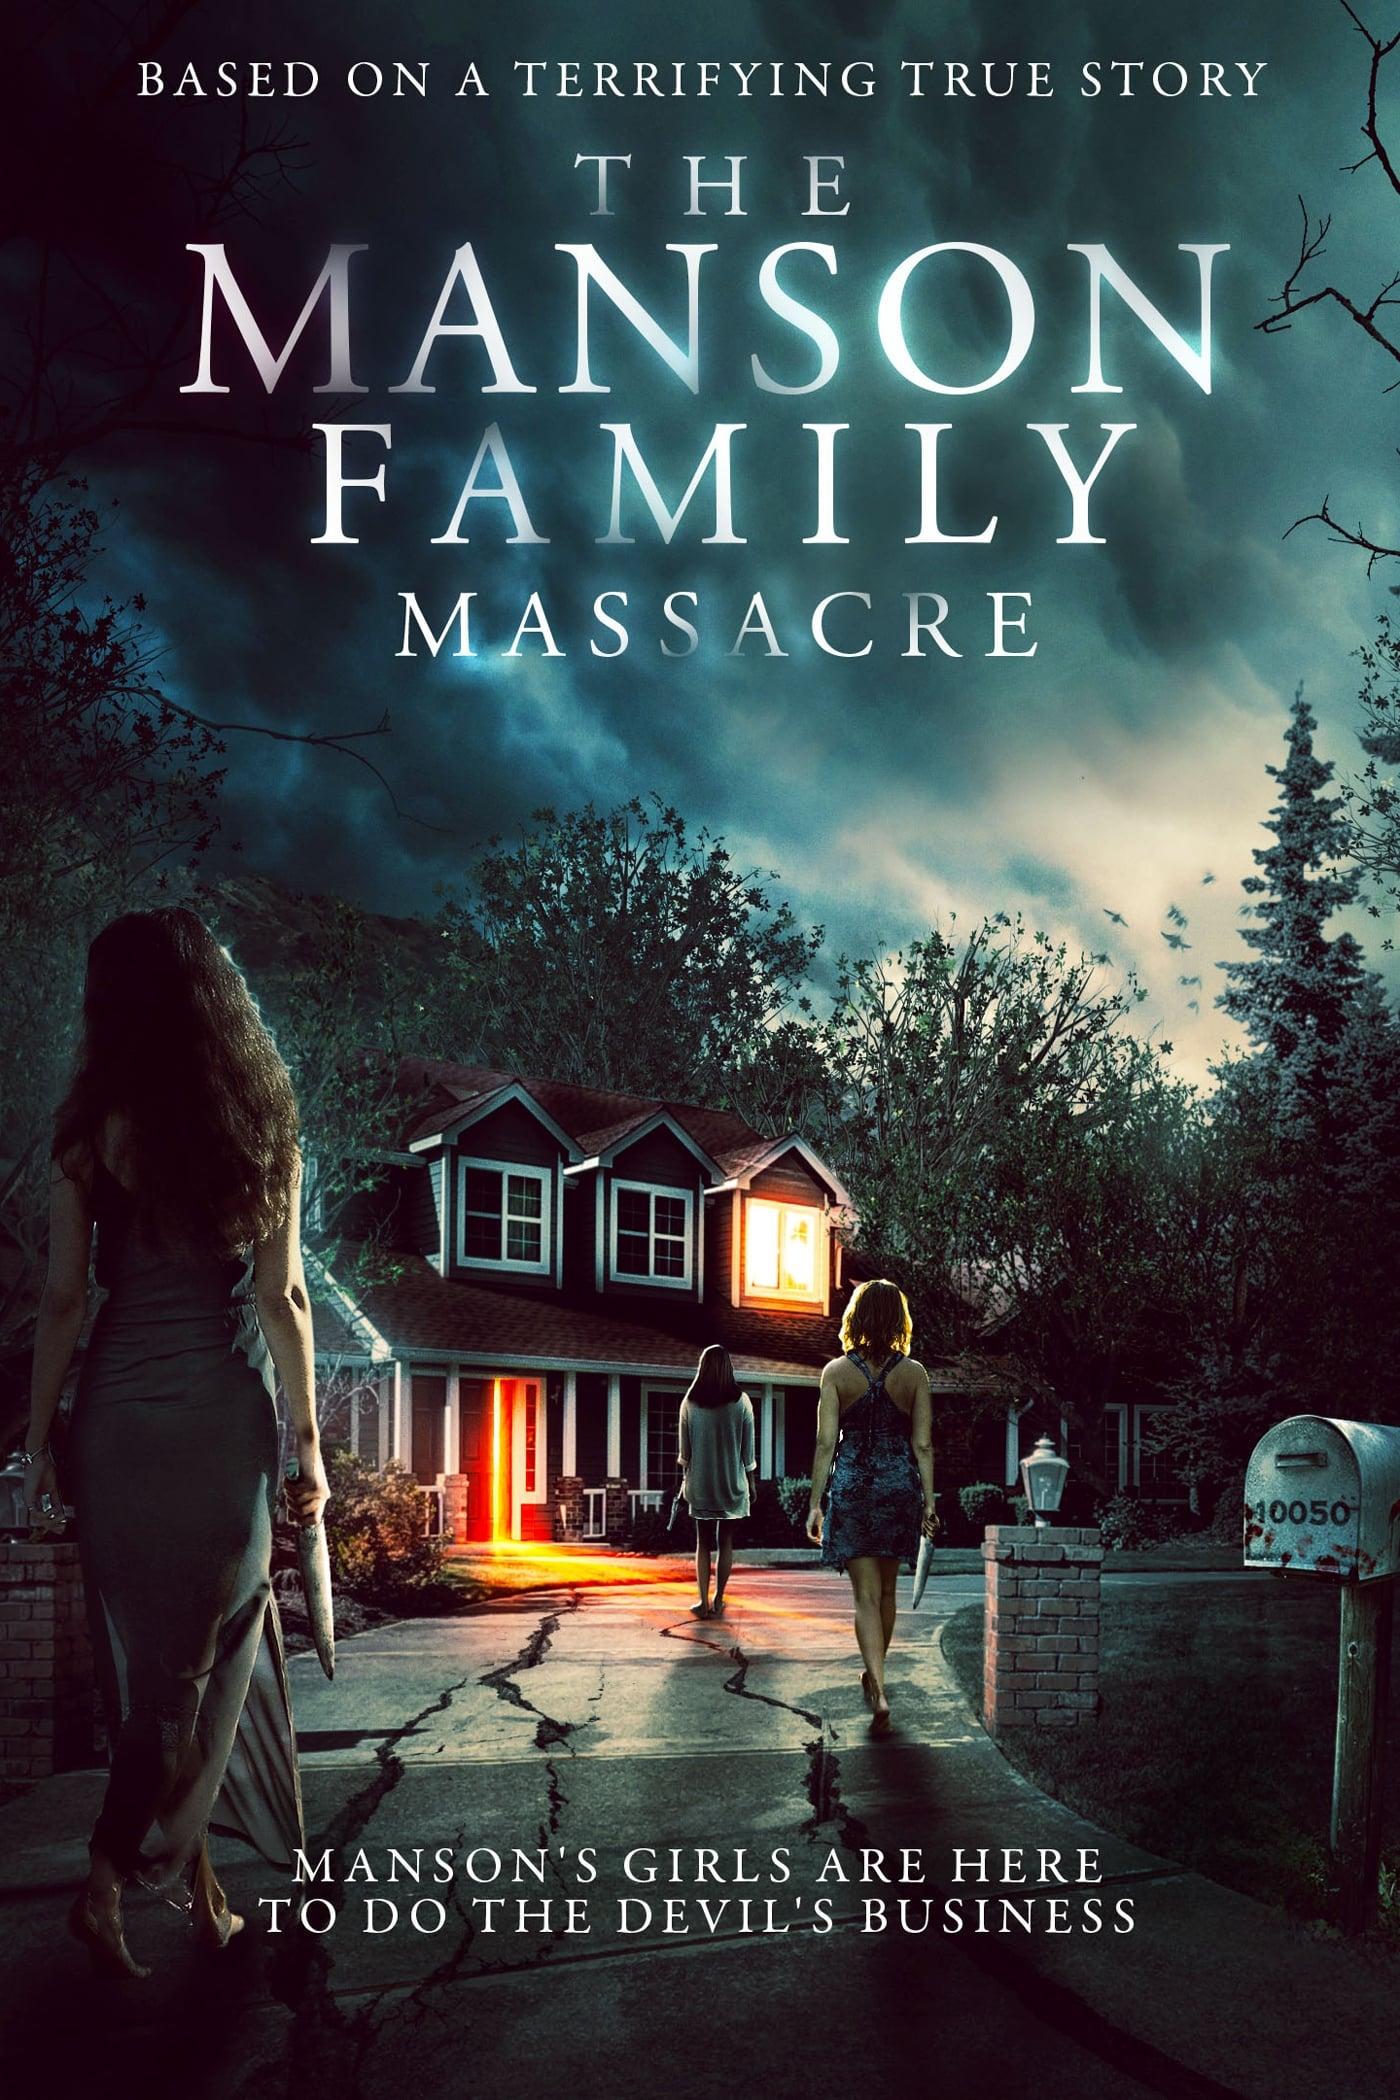 The Manson Family Massacre poster